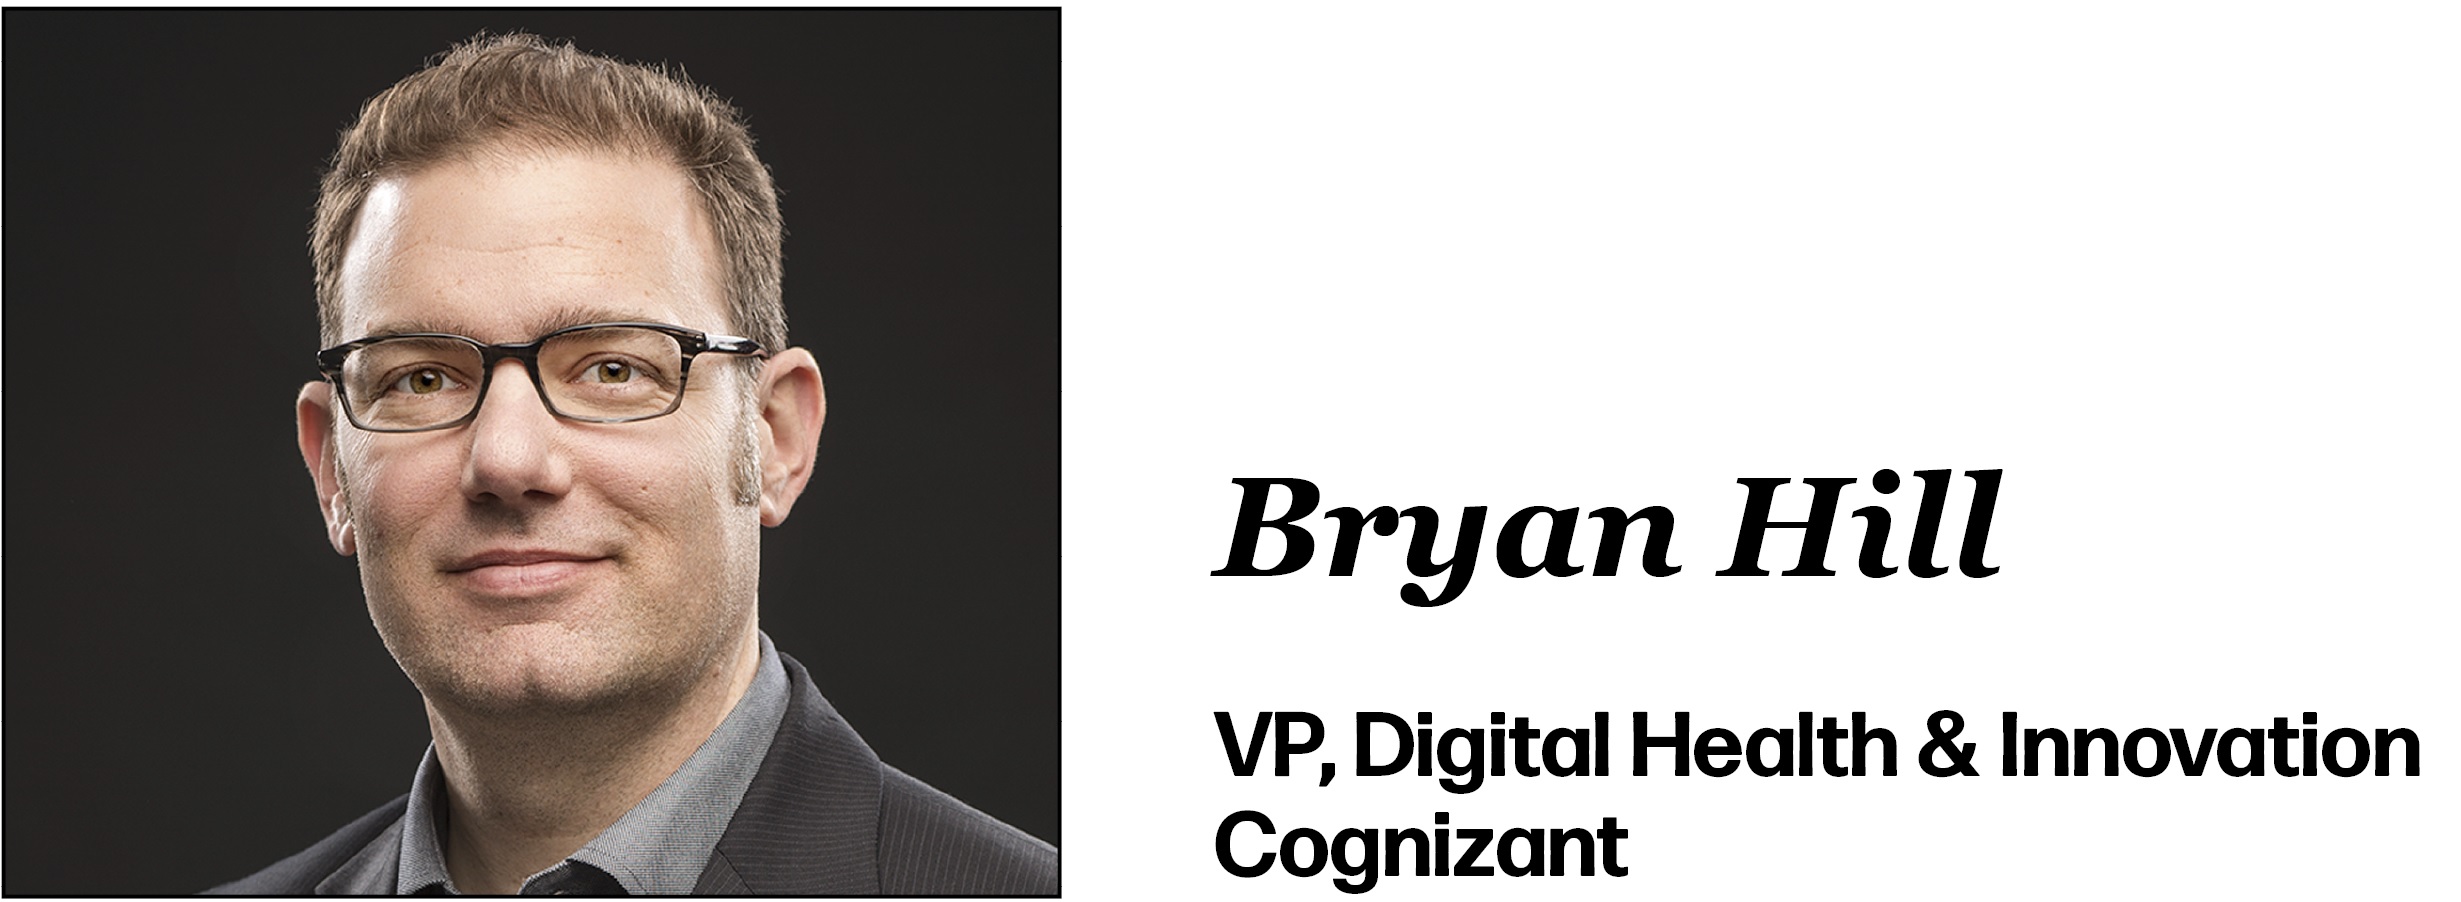 Bryan Hill VP, Digital Health & Innovation Cognizant